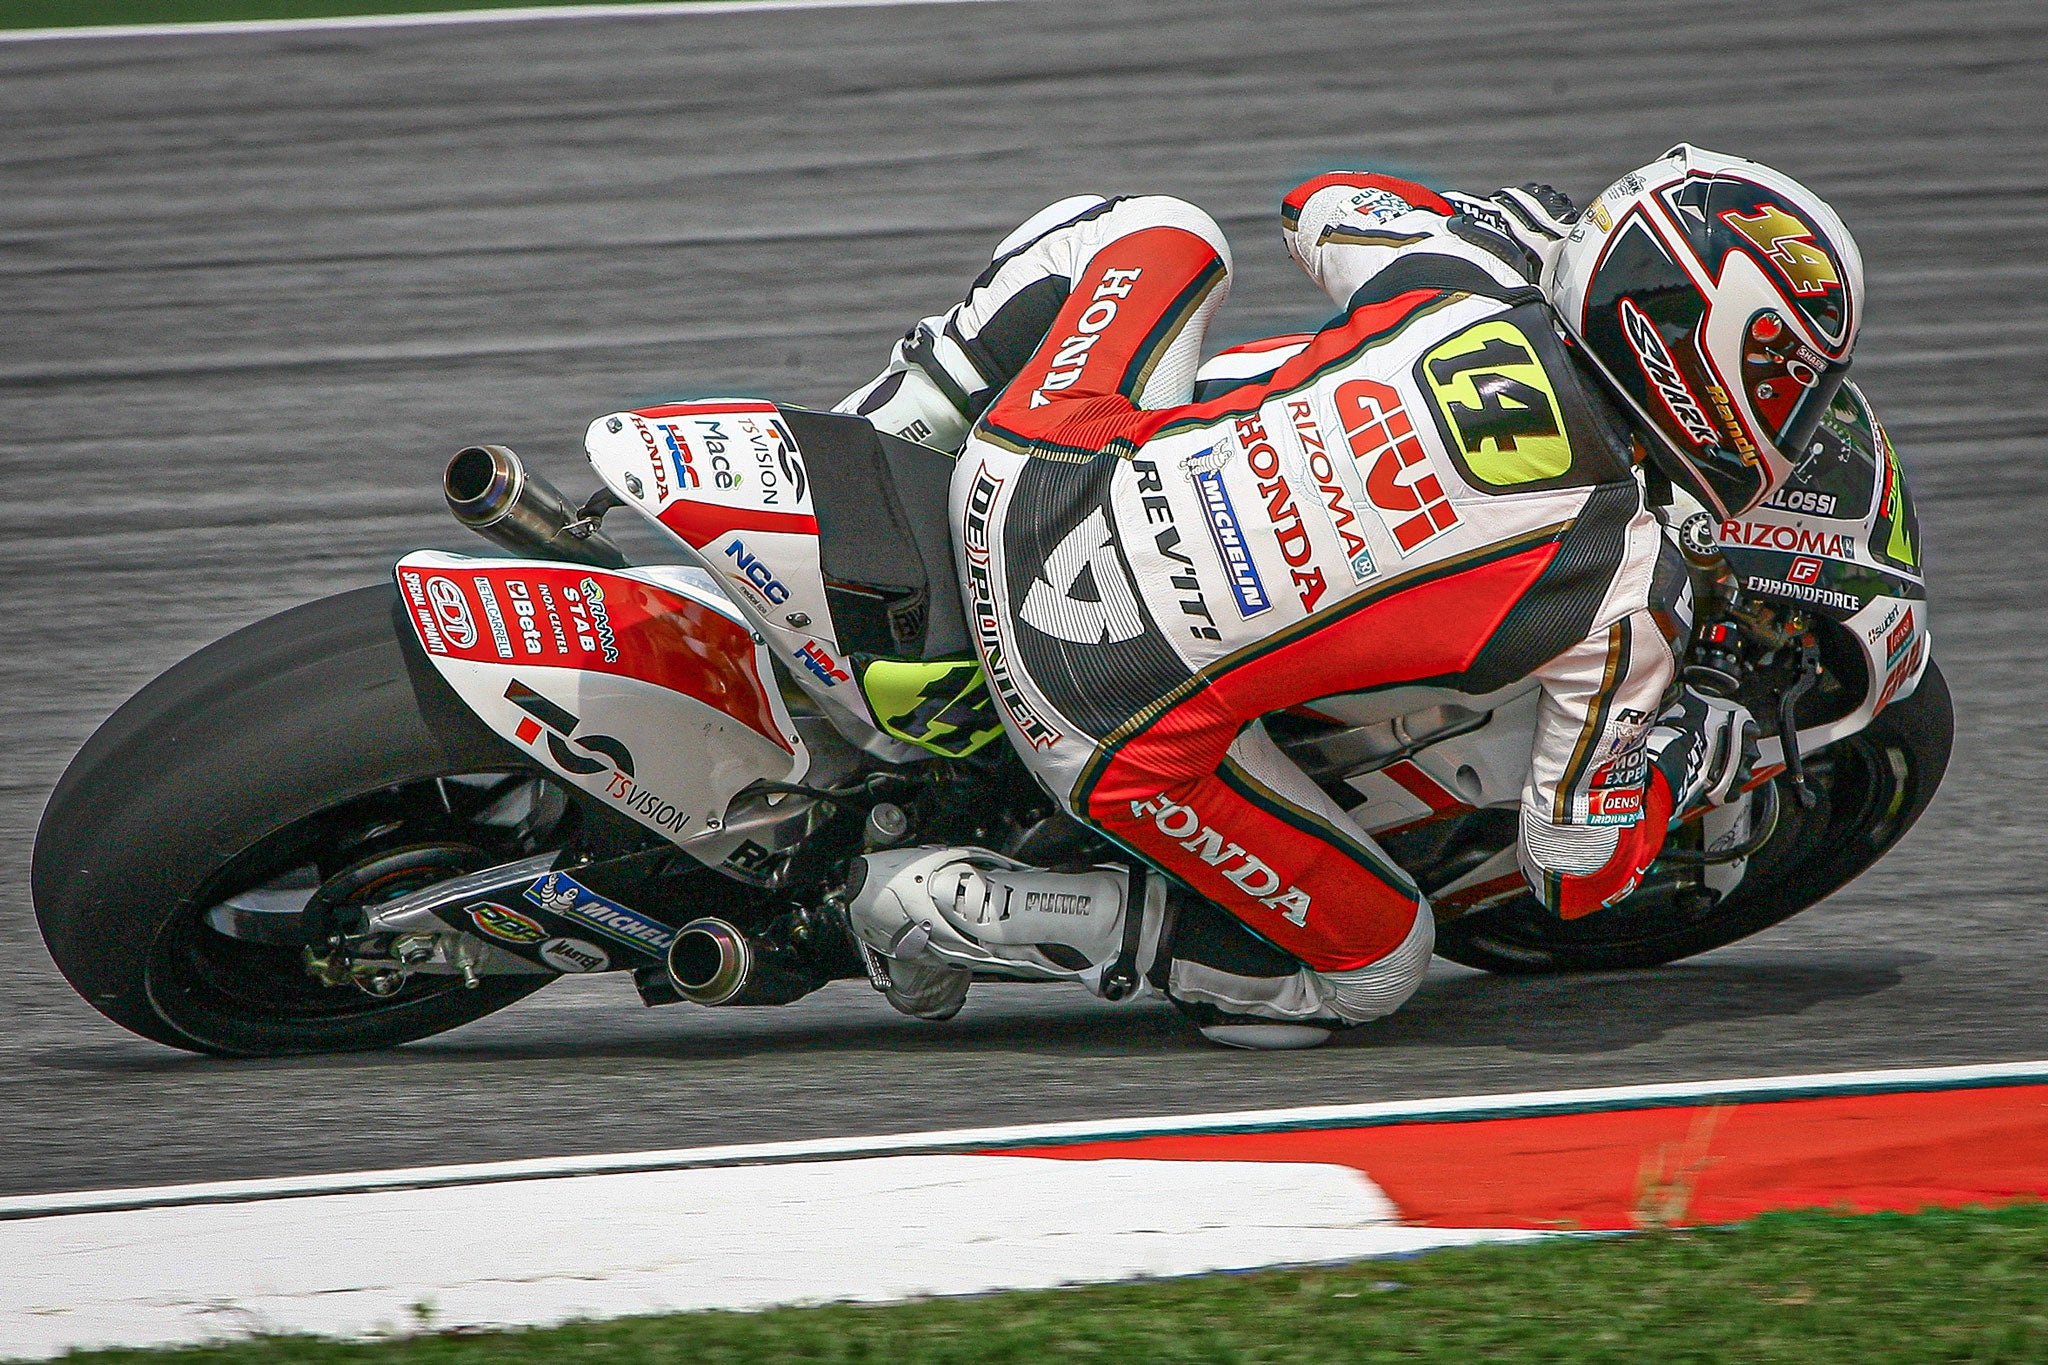 Randy de Puniet riding the MotoGP in 2008